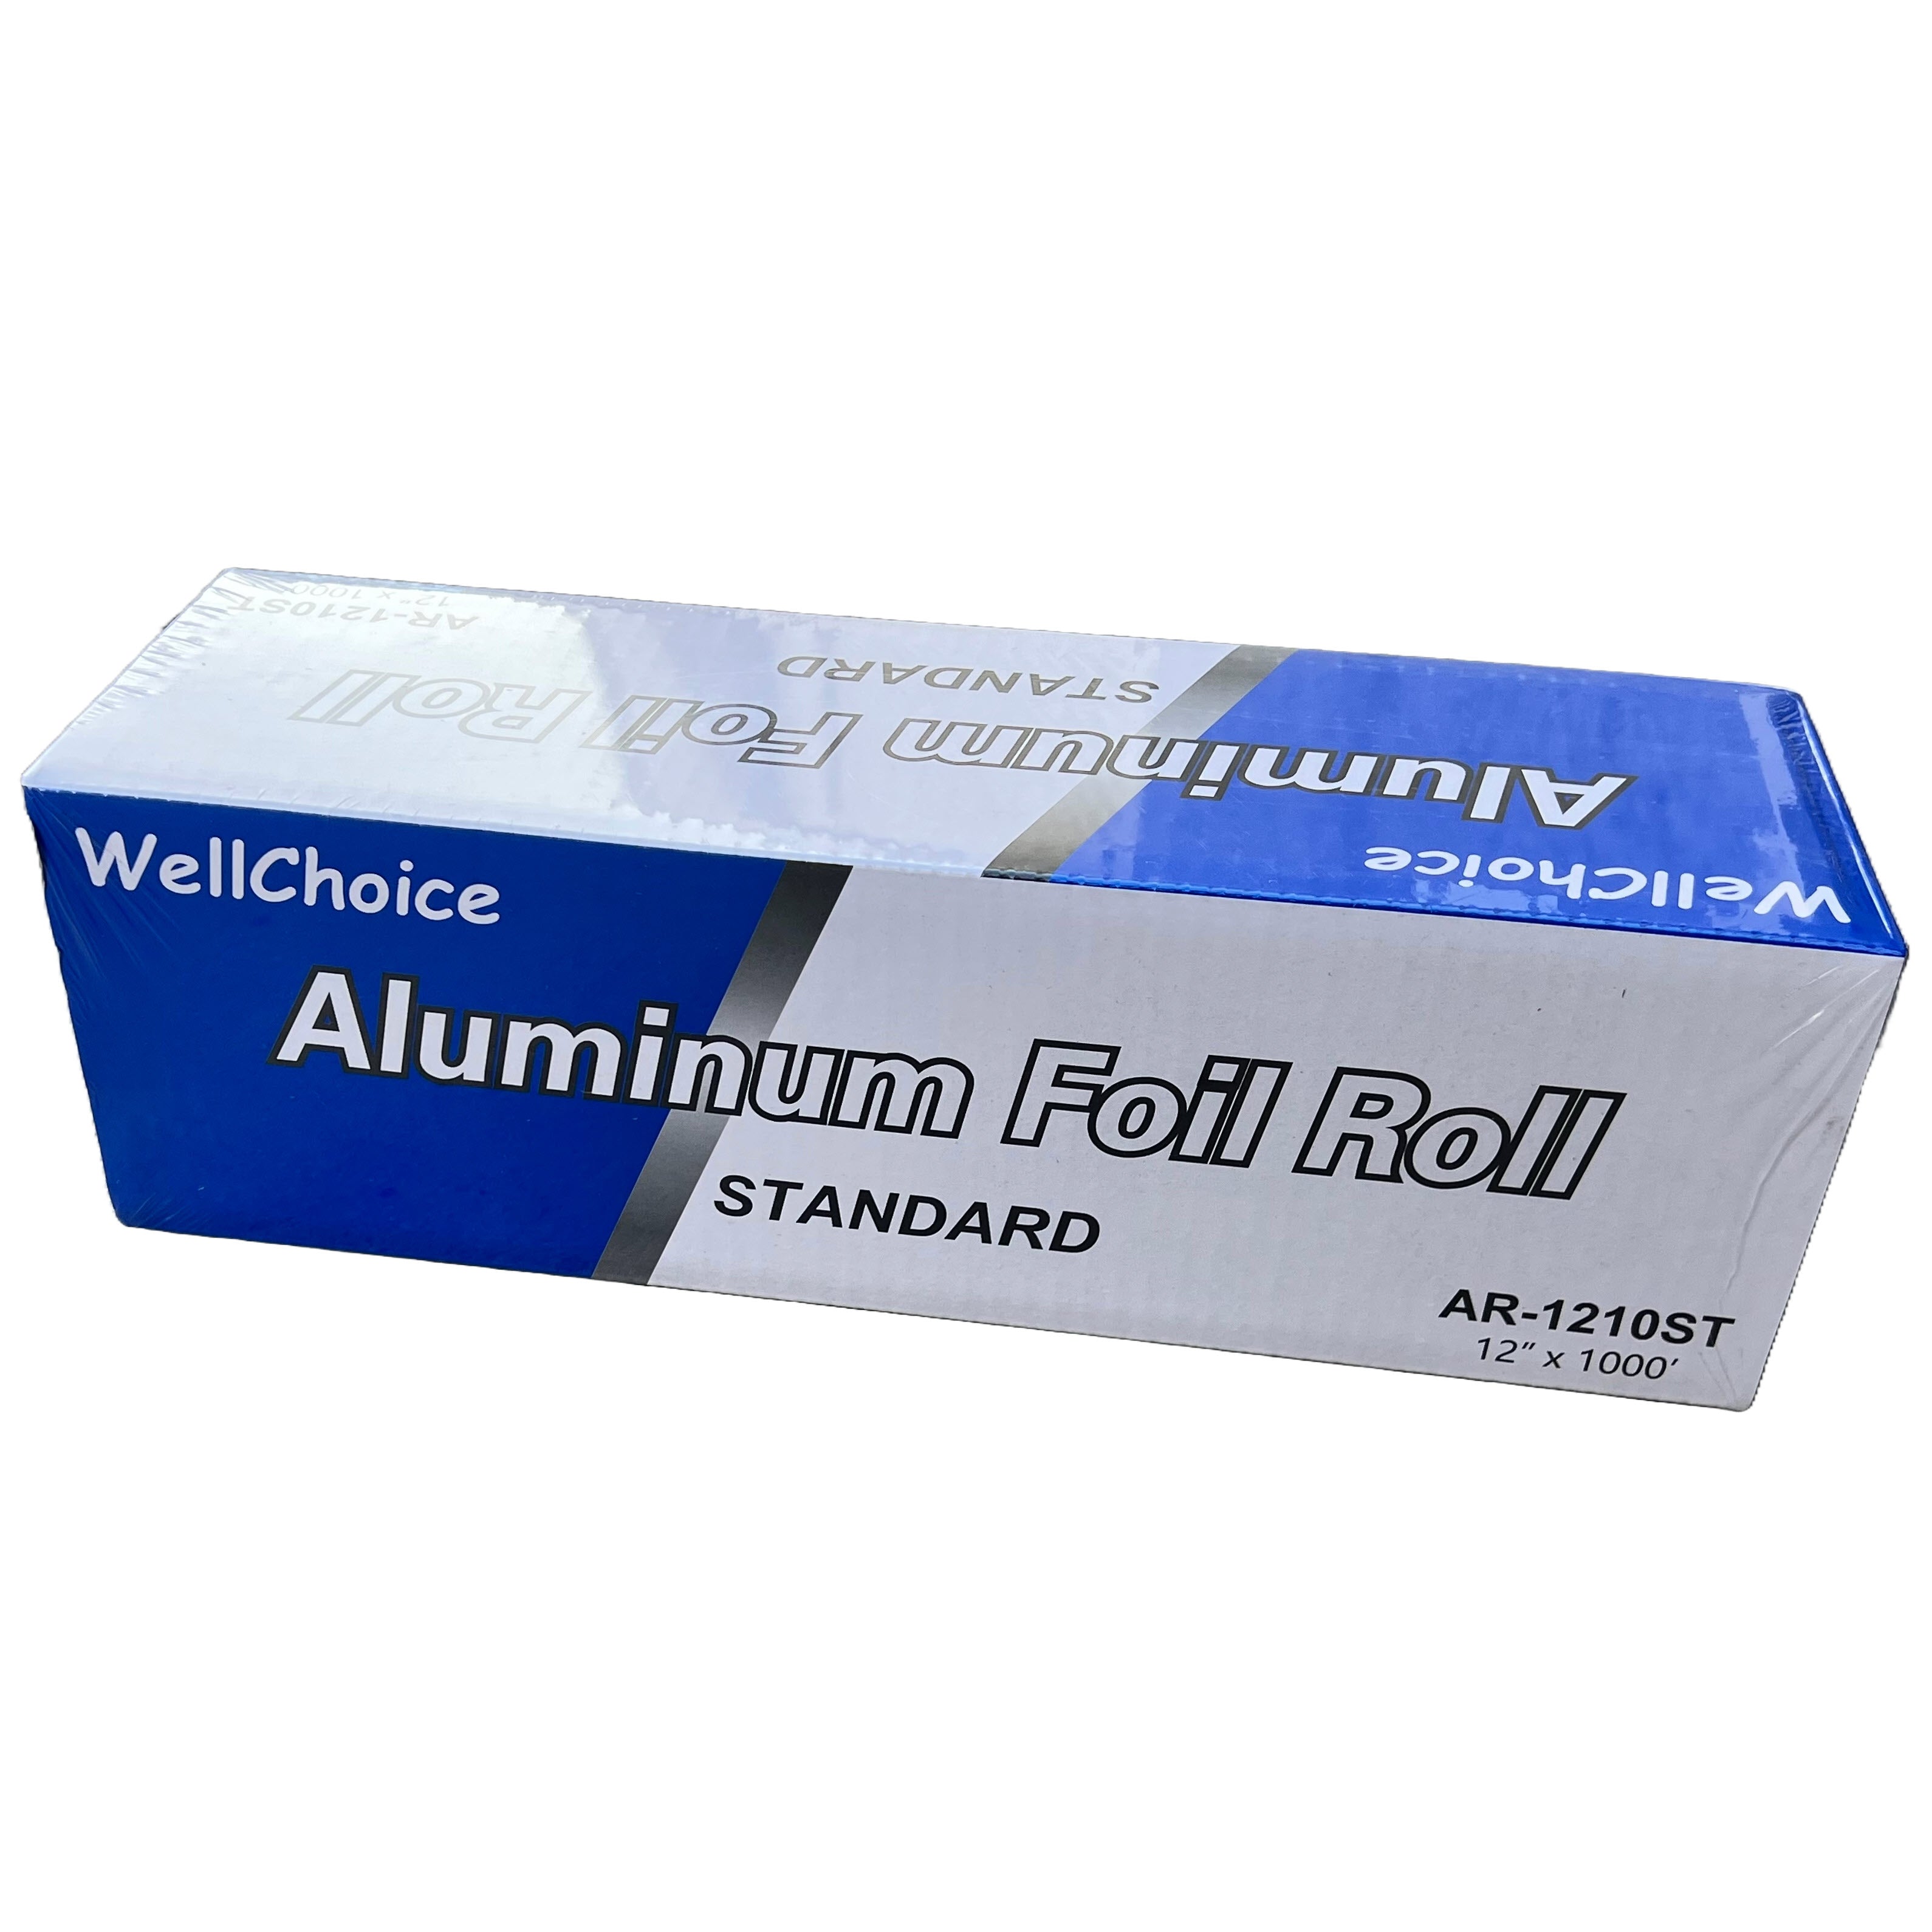 12"x1000’ Standard 16 mic Aluminum foil roll - Wellcare